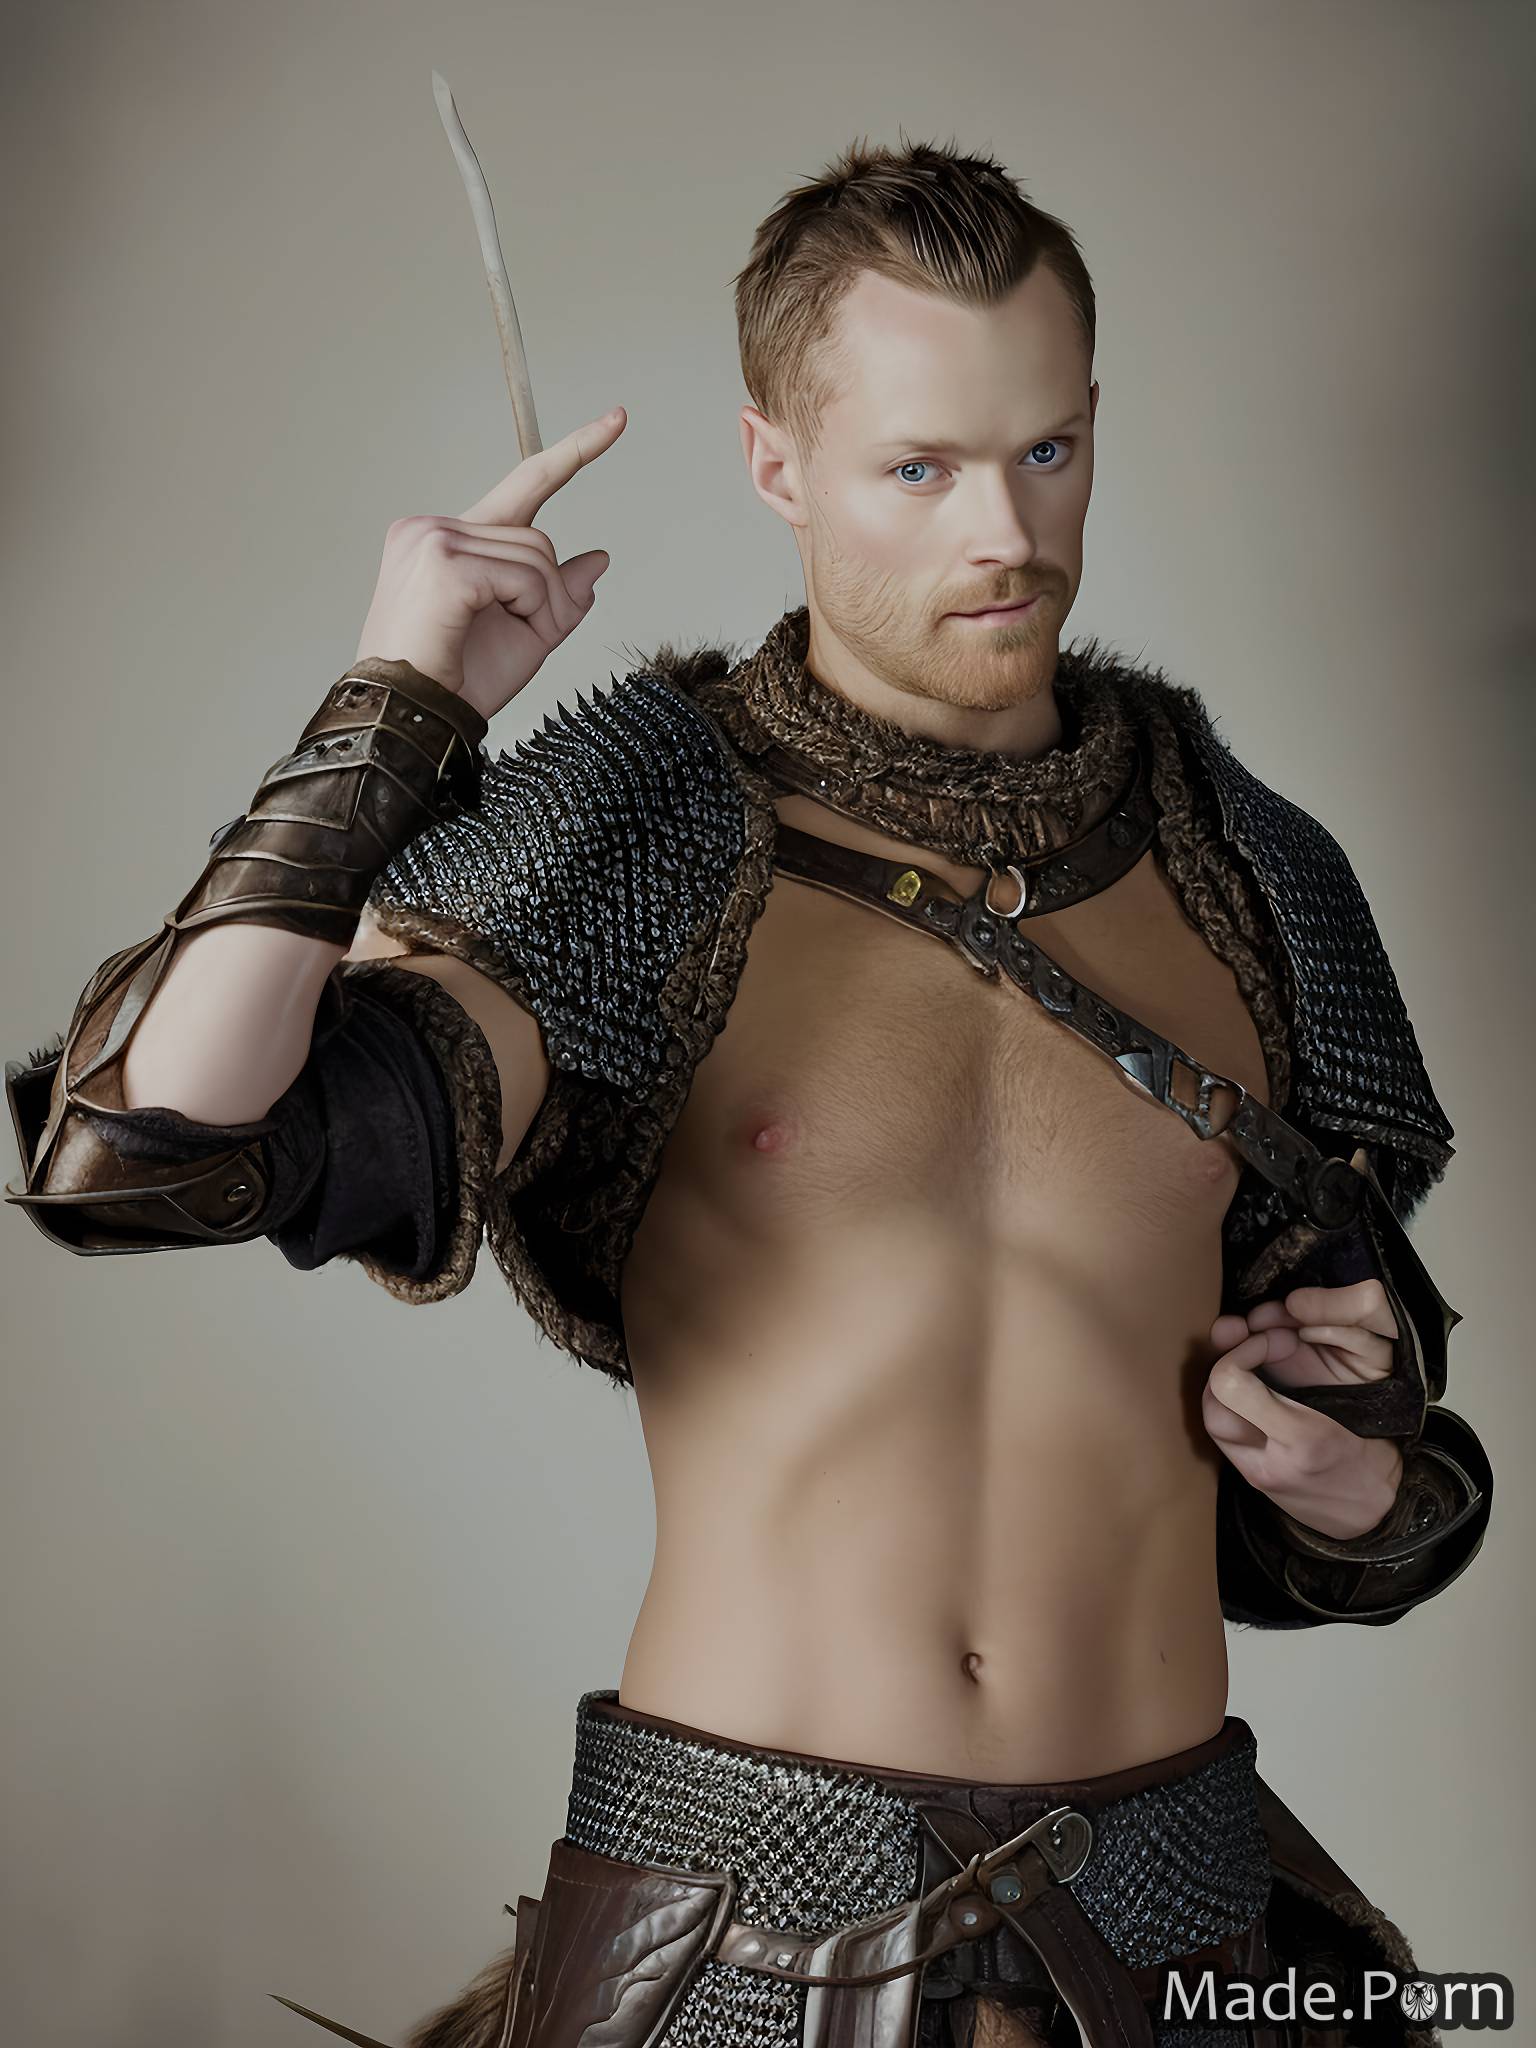 uncircumcised cock fur nude gay fantasy armor viking scandinavian